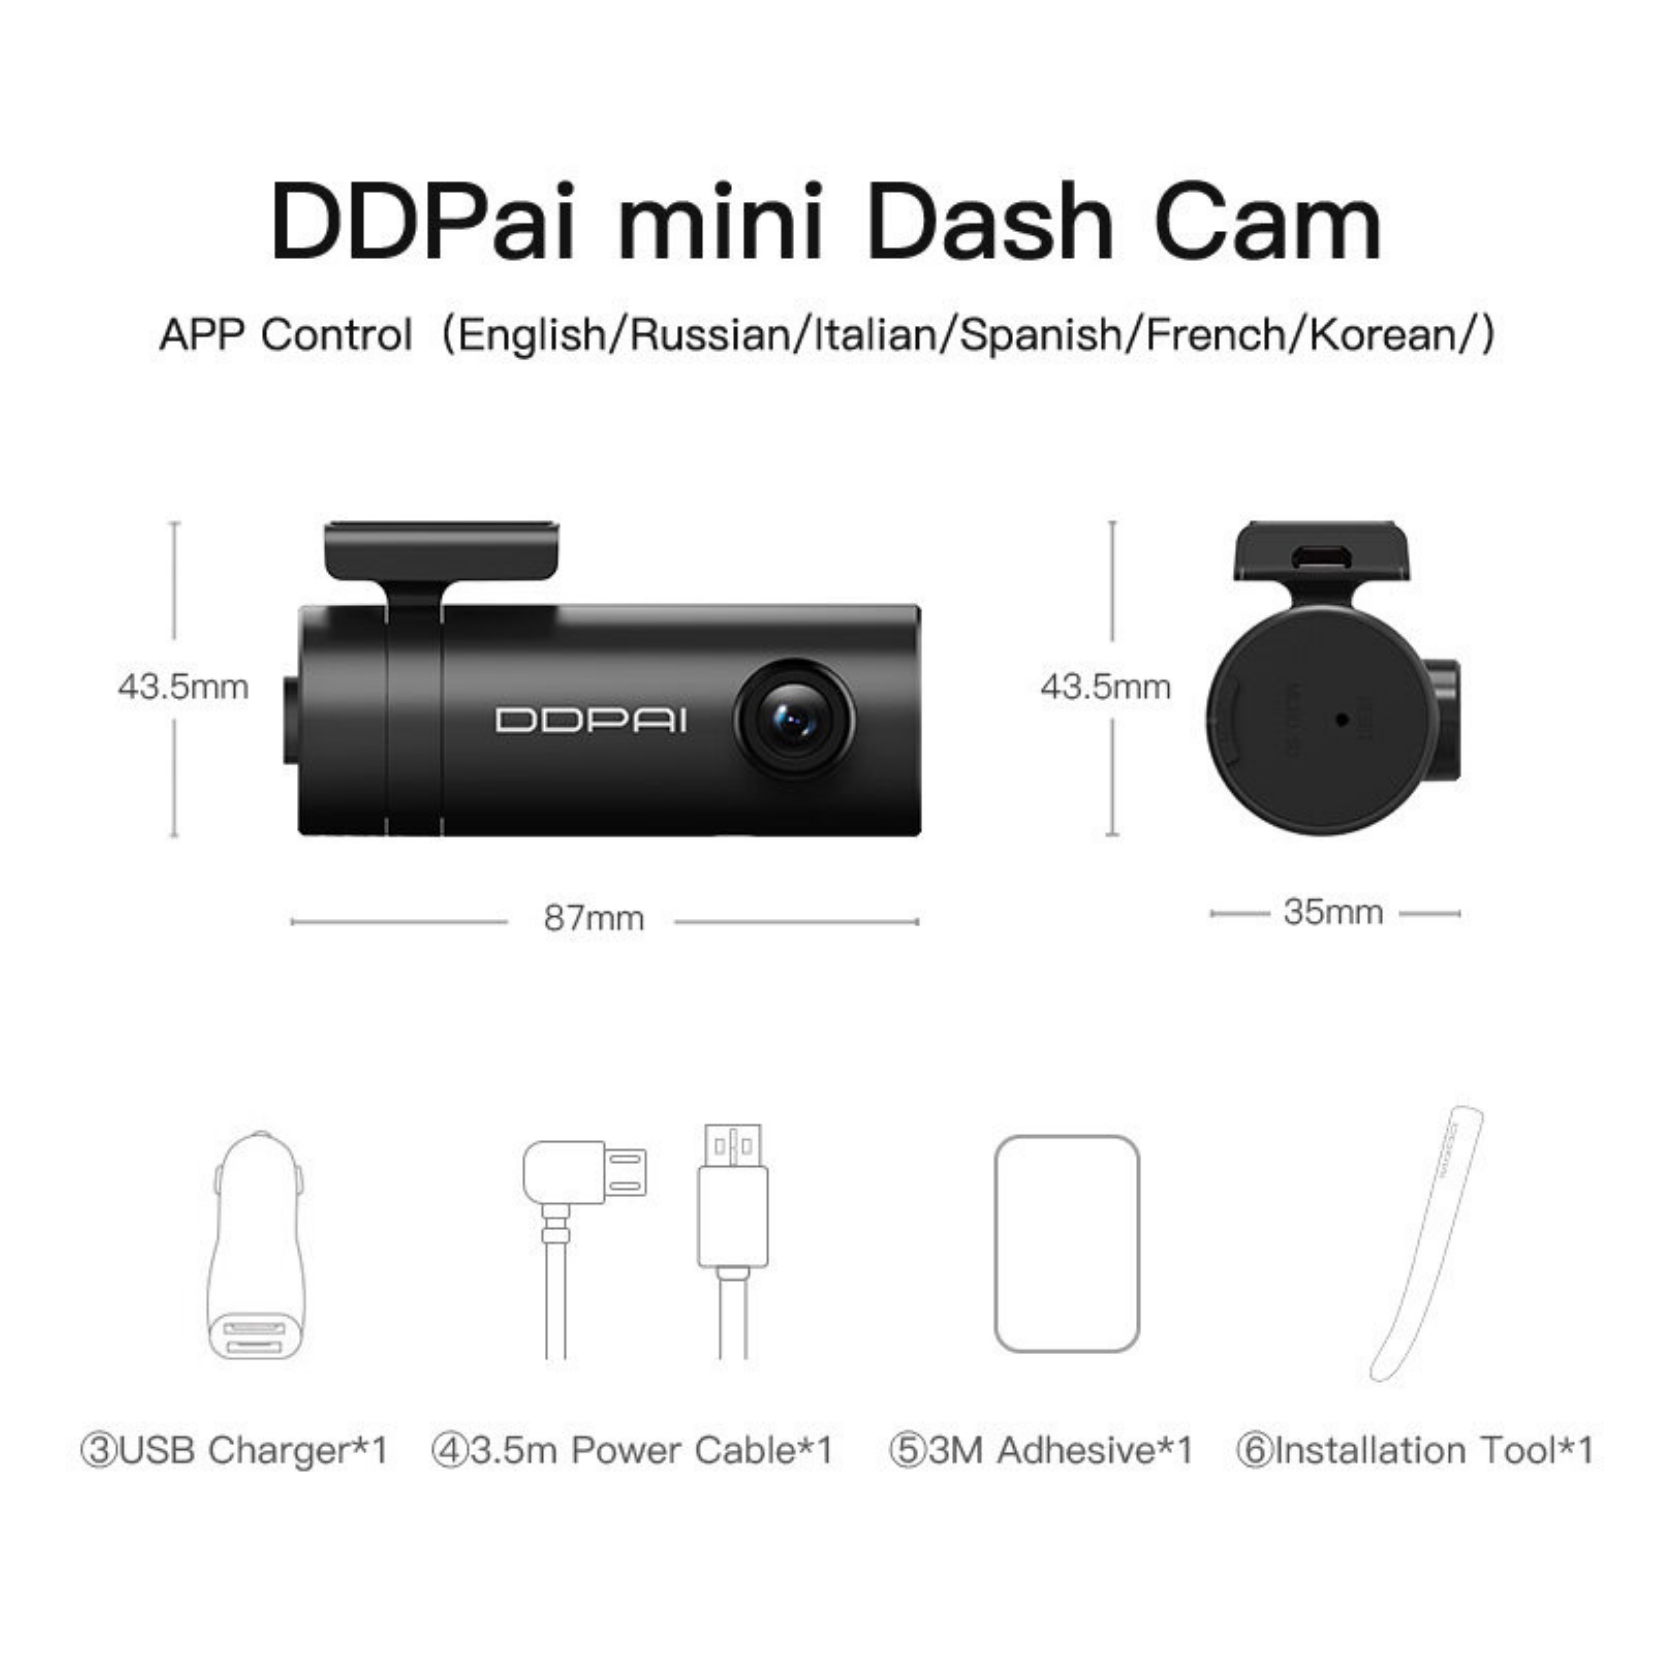 DDPai Dash Cam Mini - Super Night Vision | 330 Degree Rotatable | 140 Degree Wide Angle